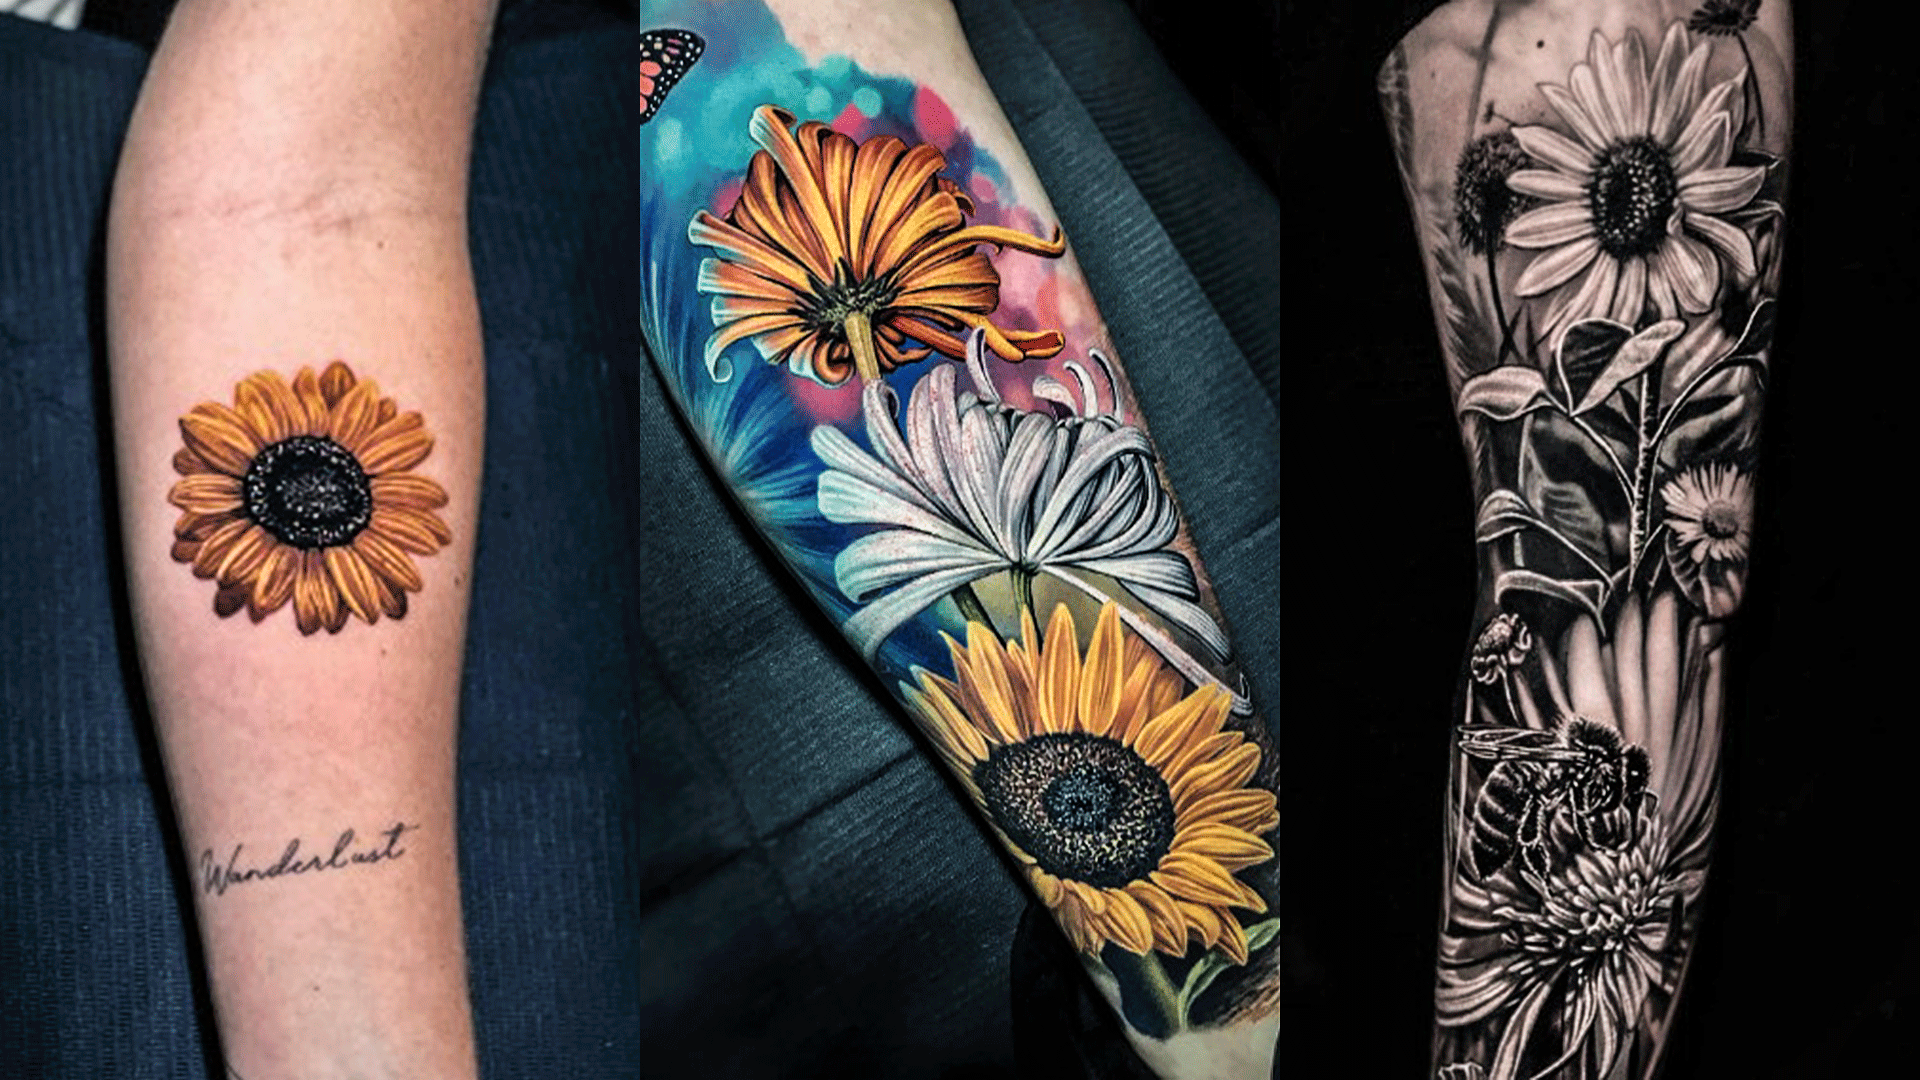 18 Sunflower Tattoo Ideas For Women - Styleoholic